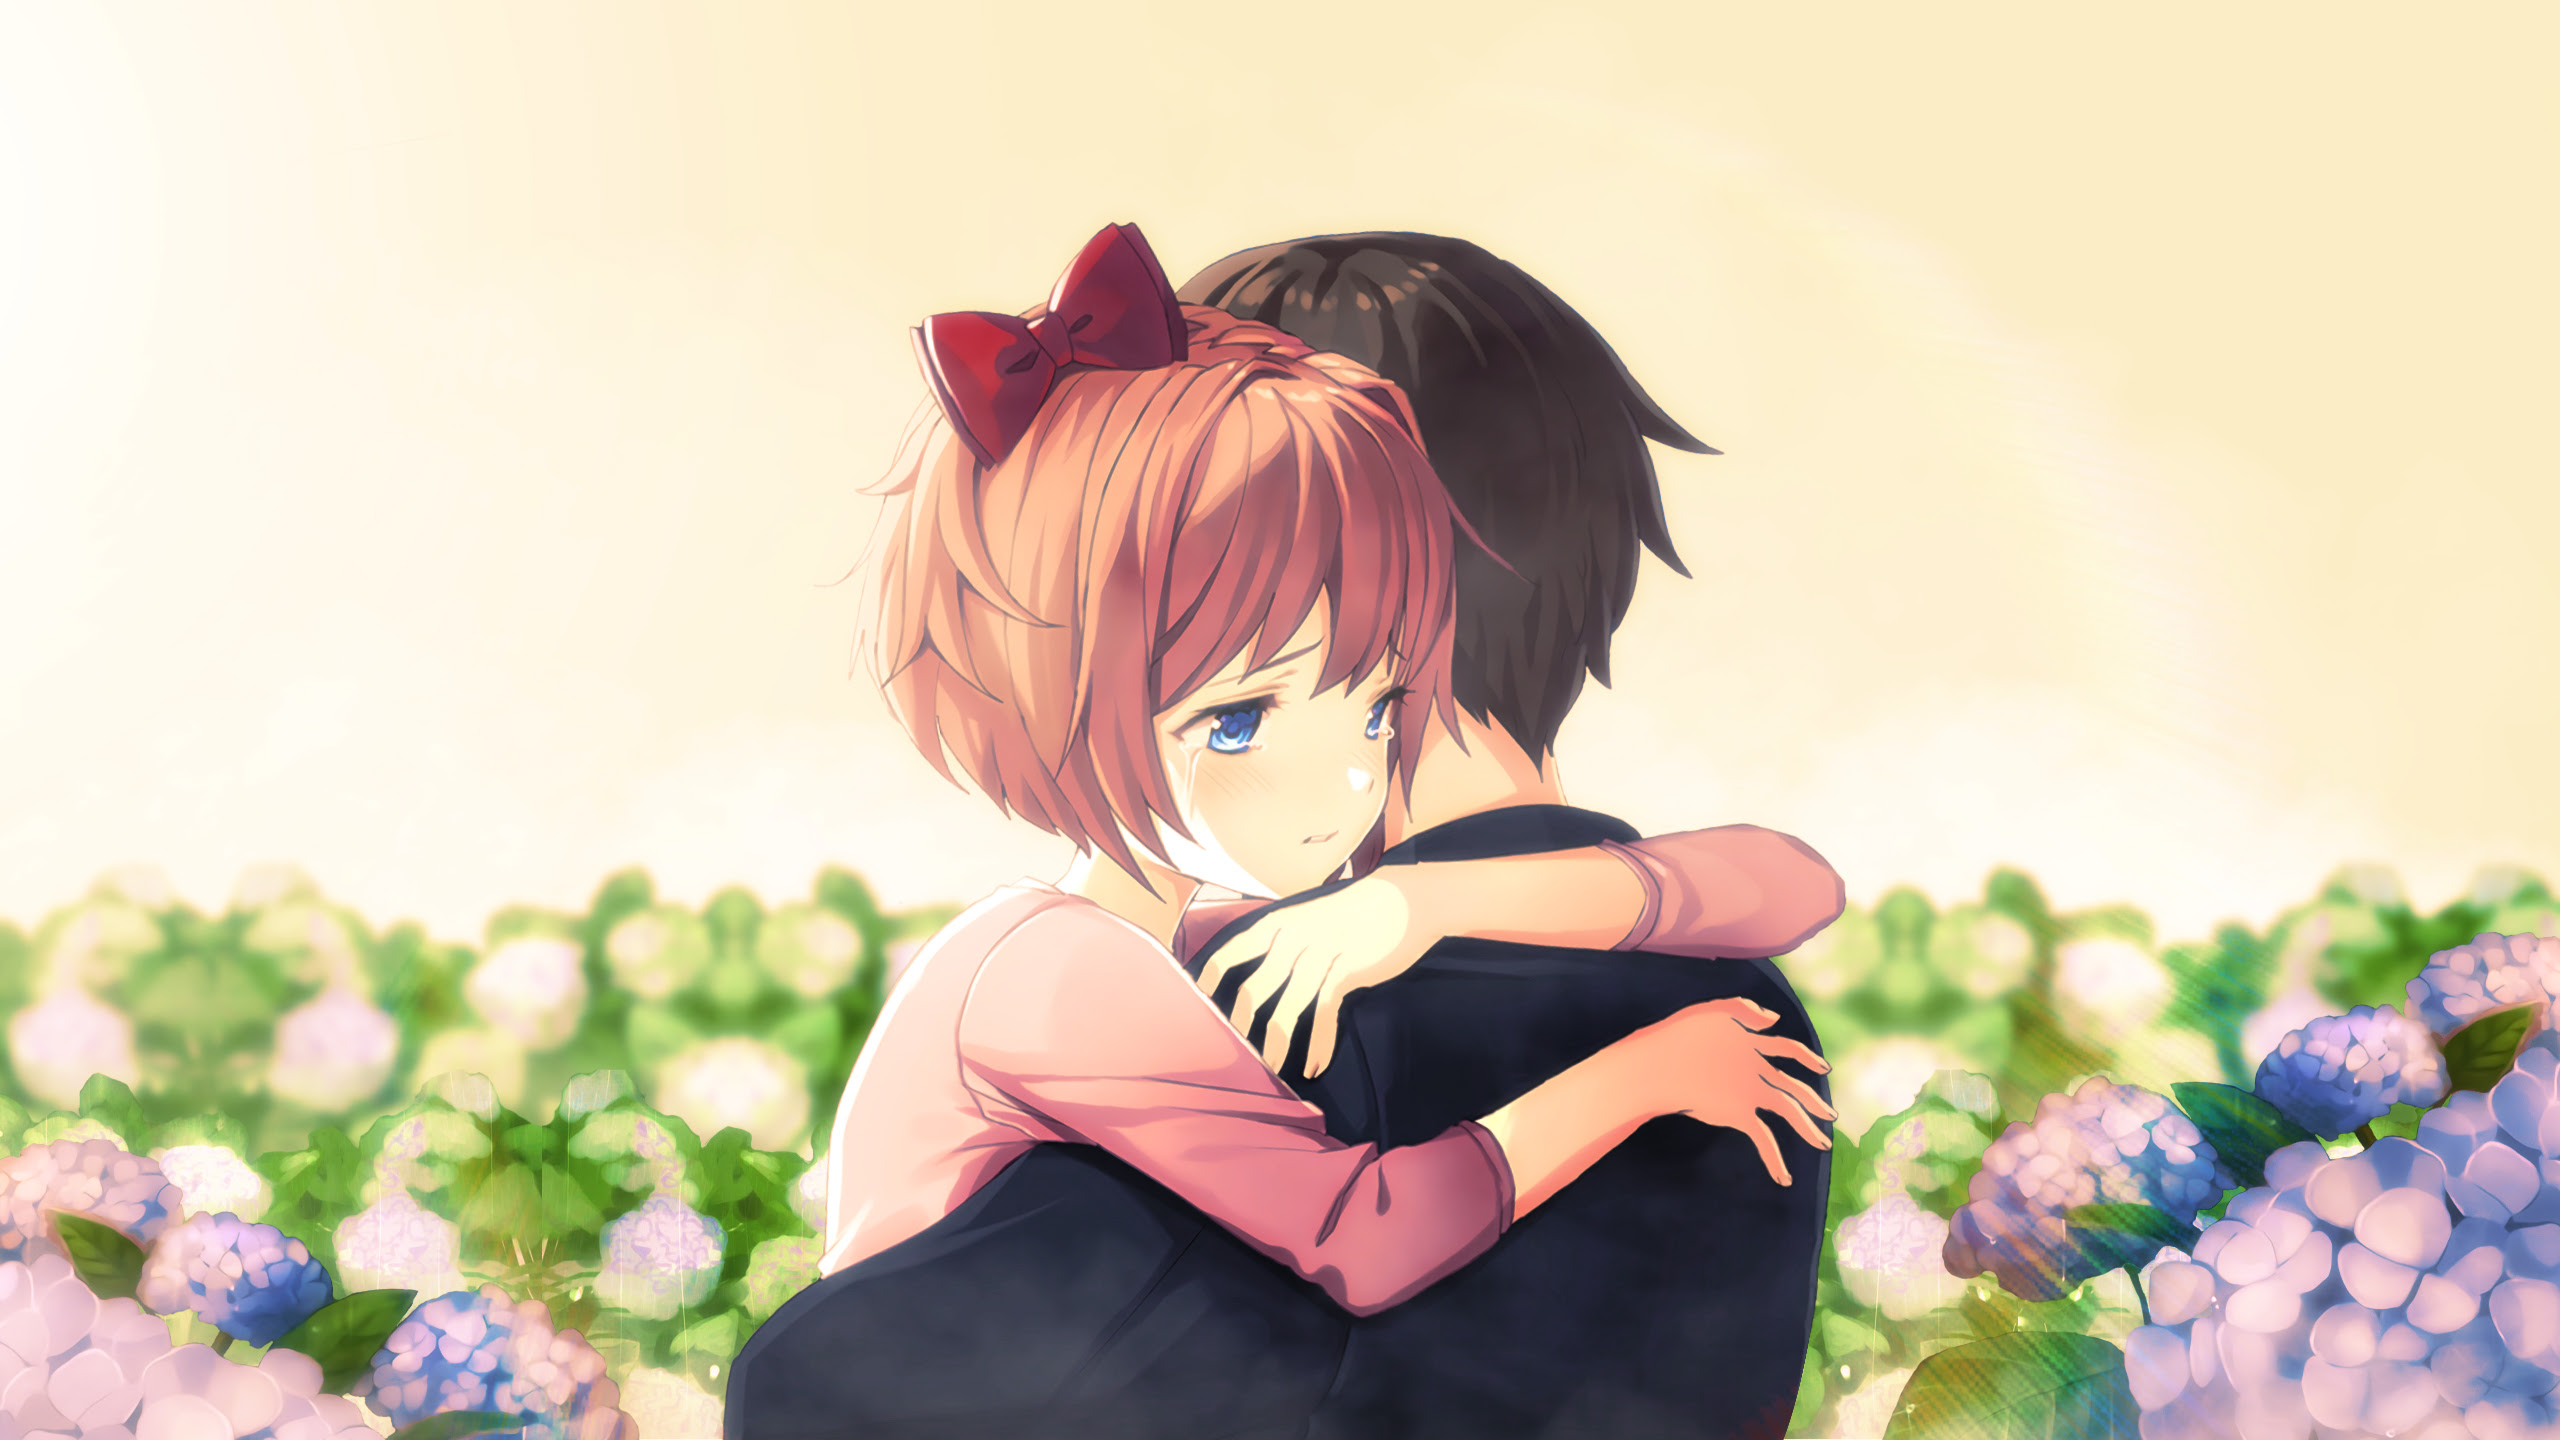 Cute Anime Couple Hug, HD Anime, 4k Wallpapers, Images ...